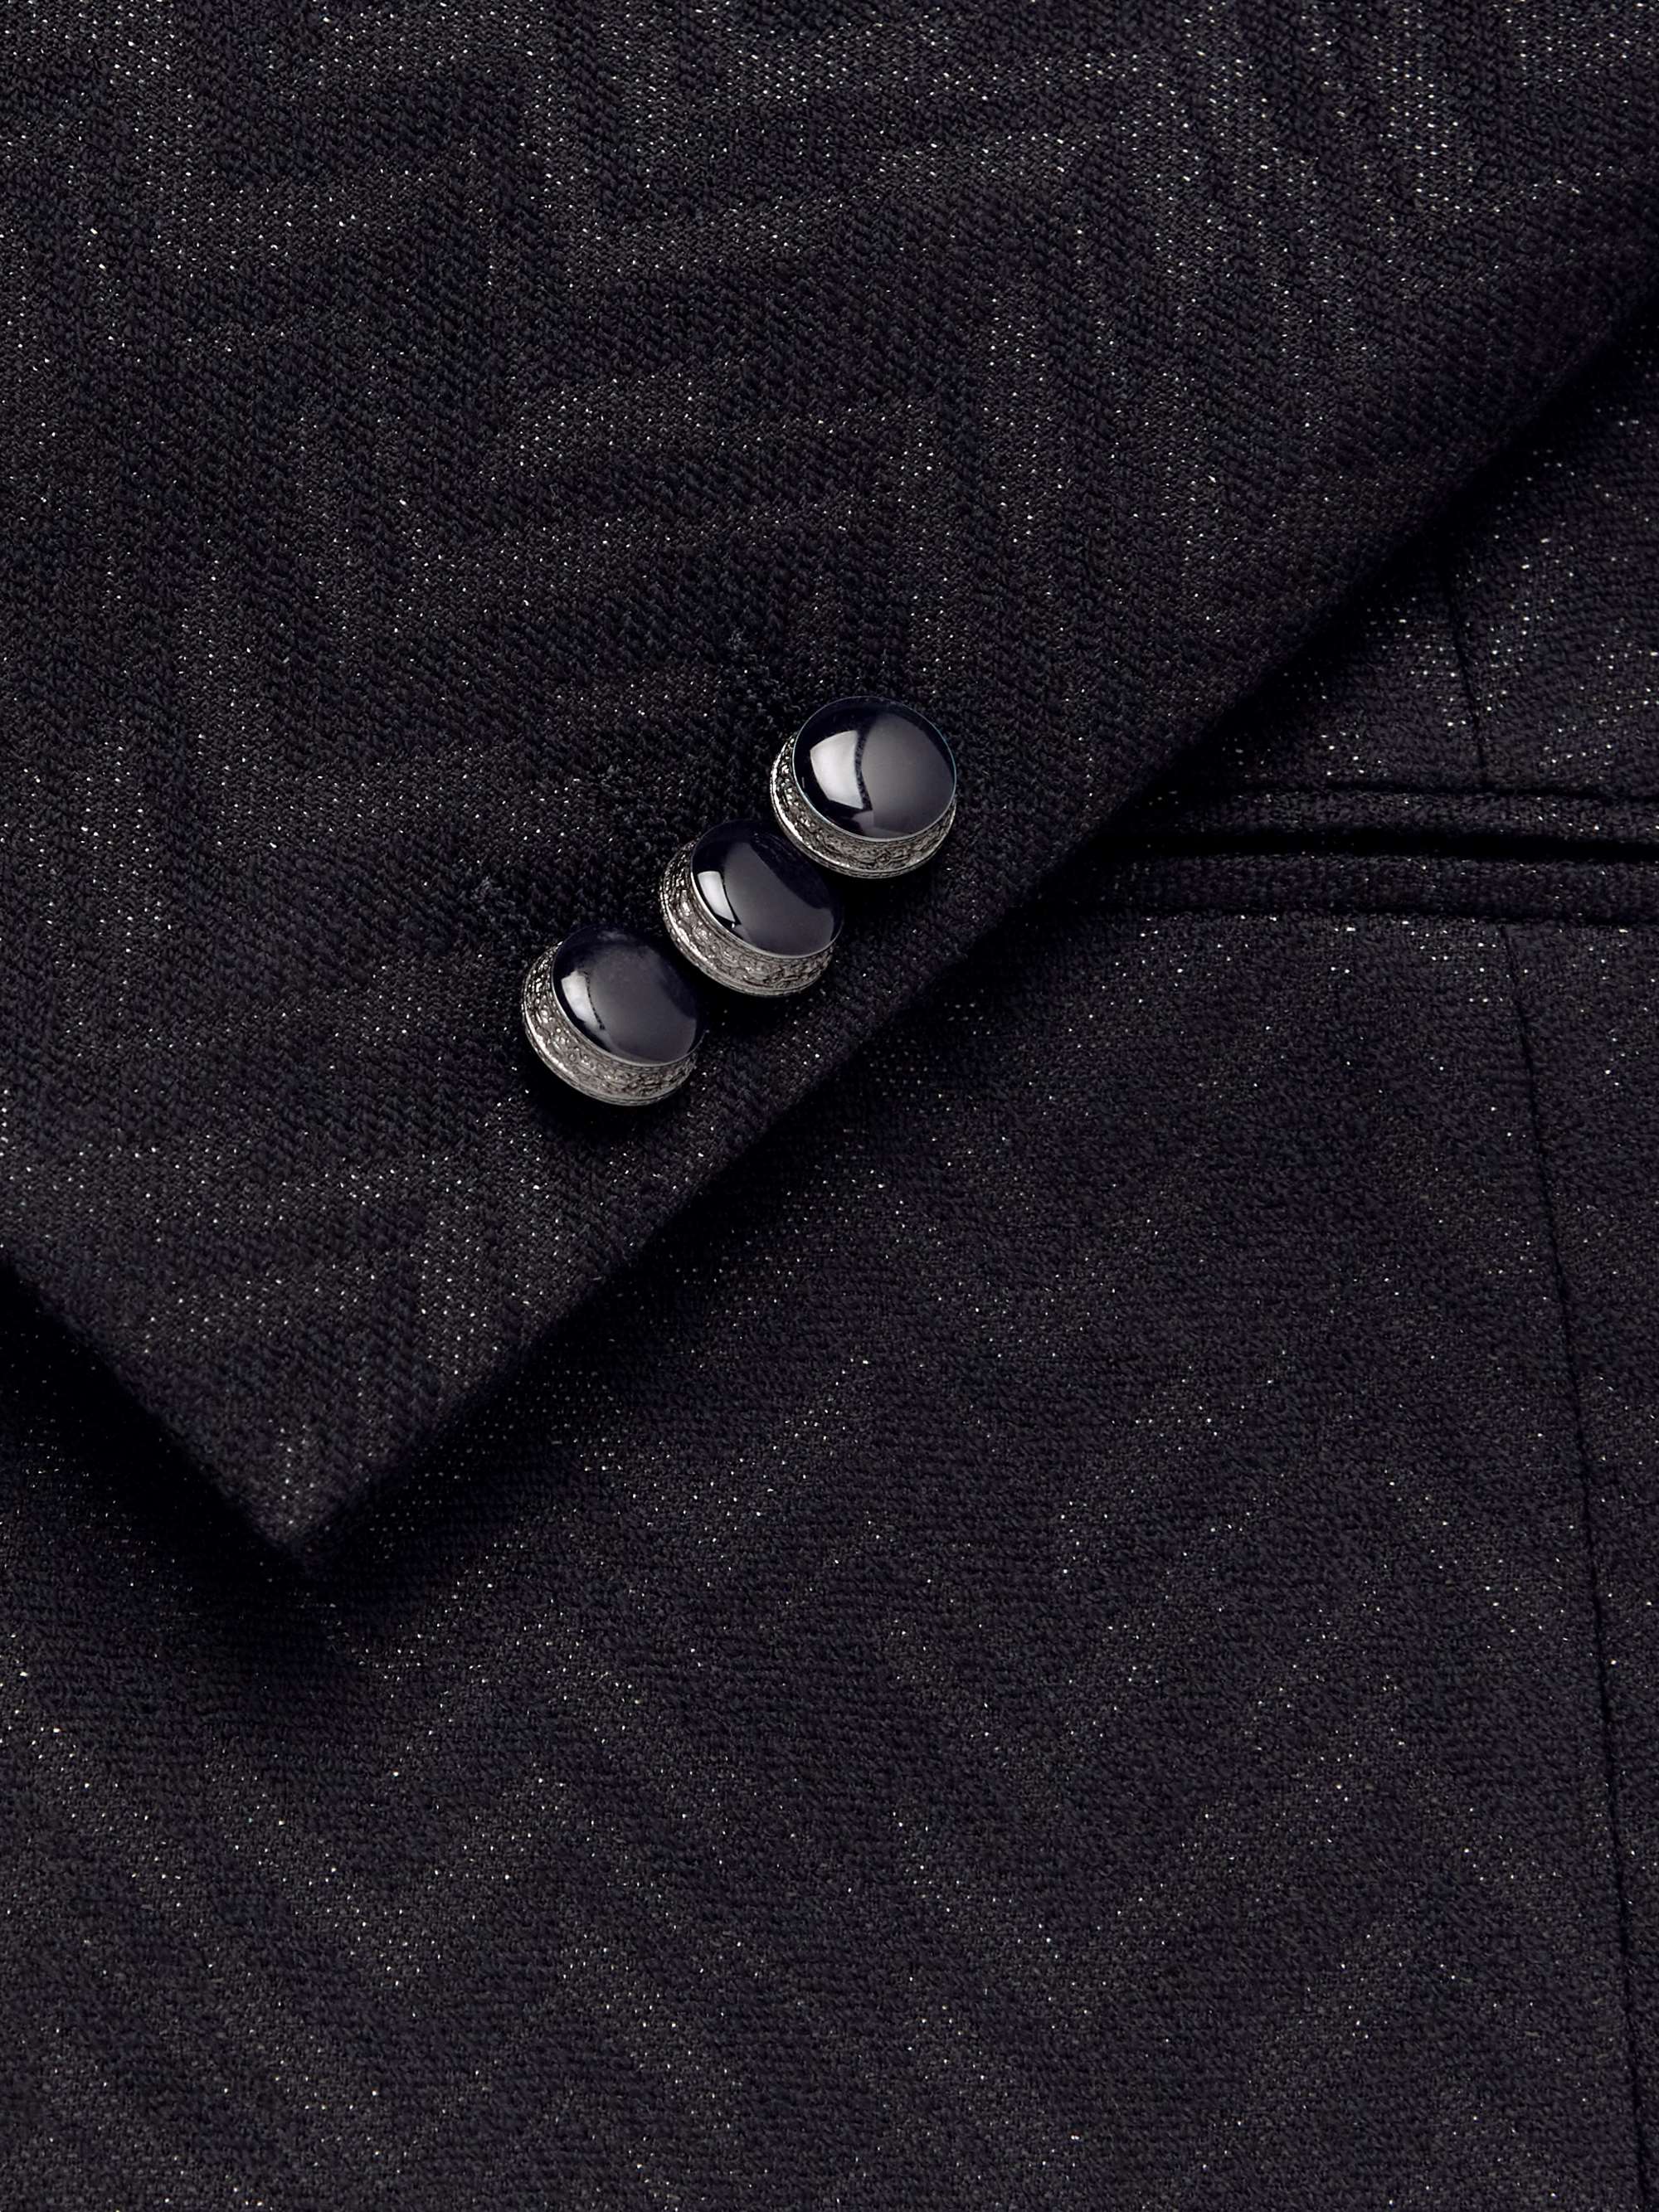 ETRO Metallic Virgin Wool-Blend Twill Tuxedo Jacket